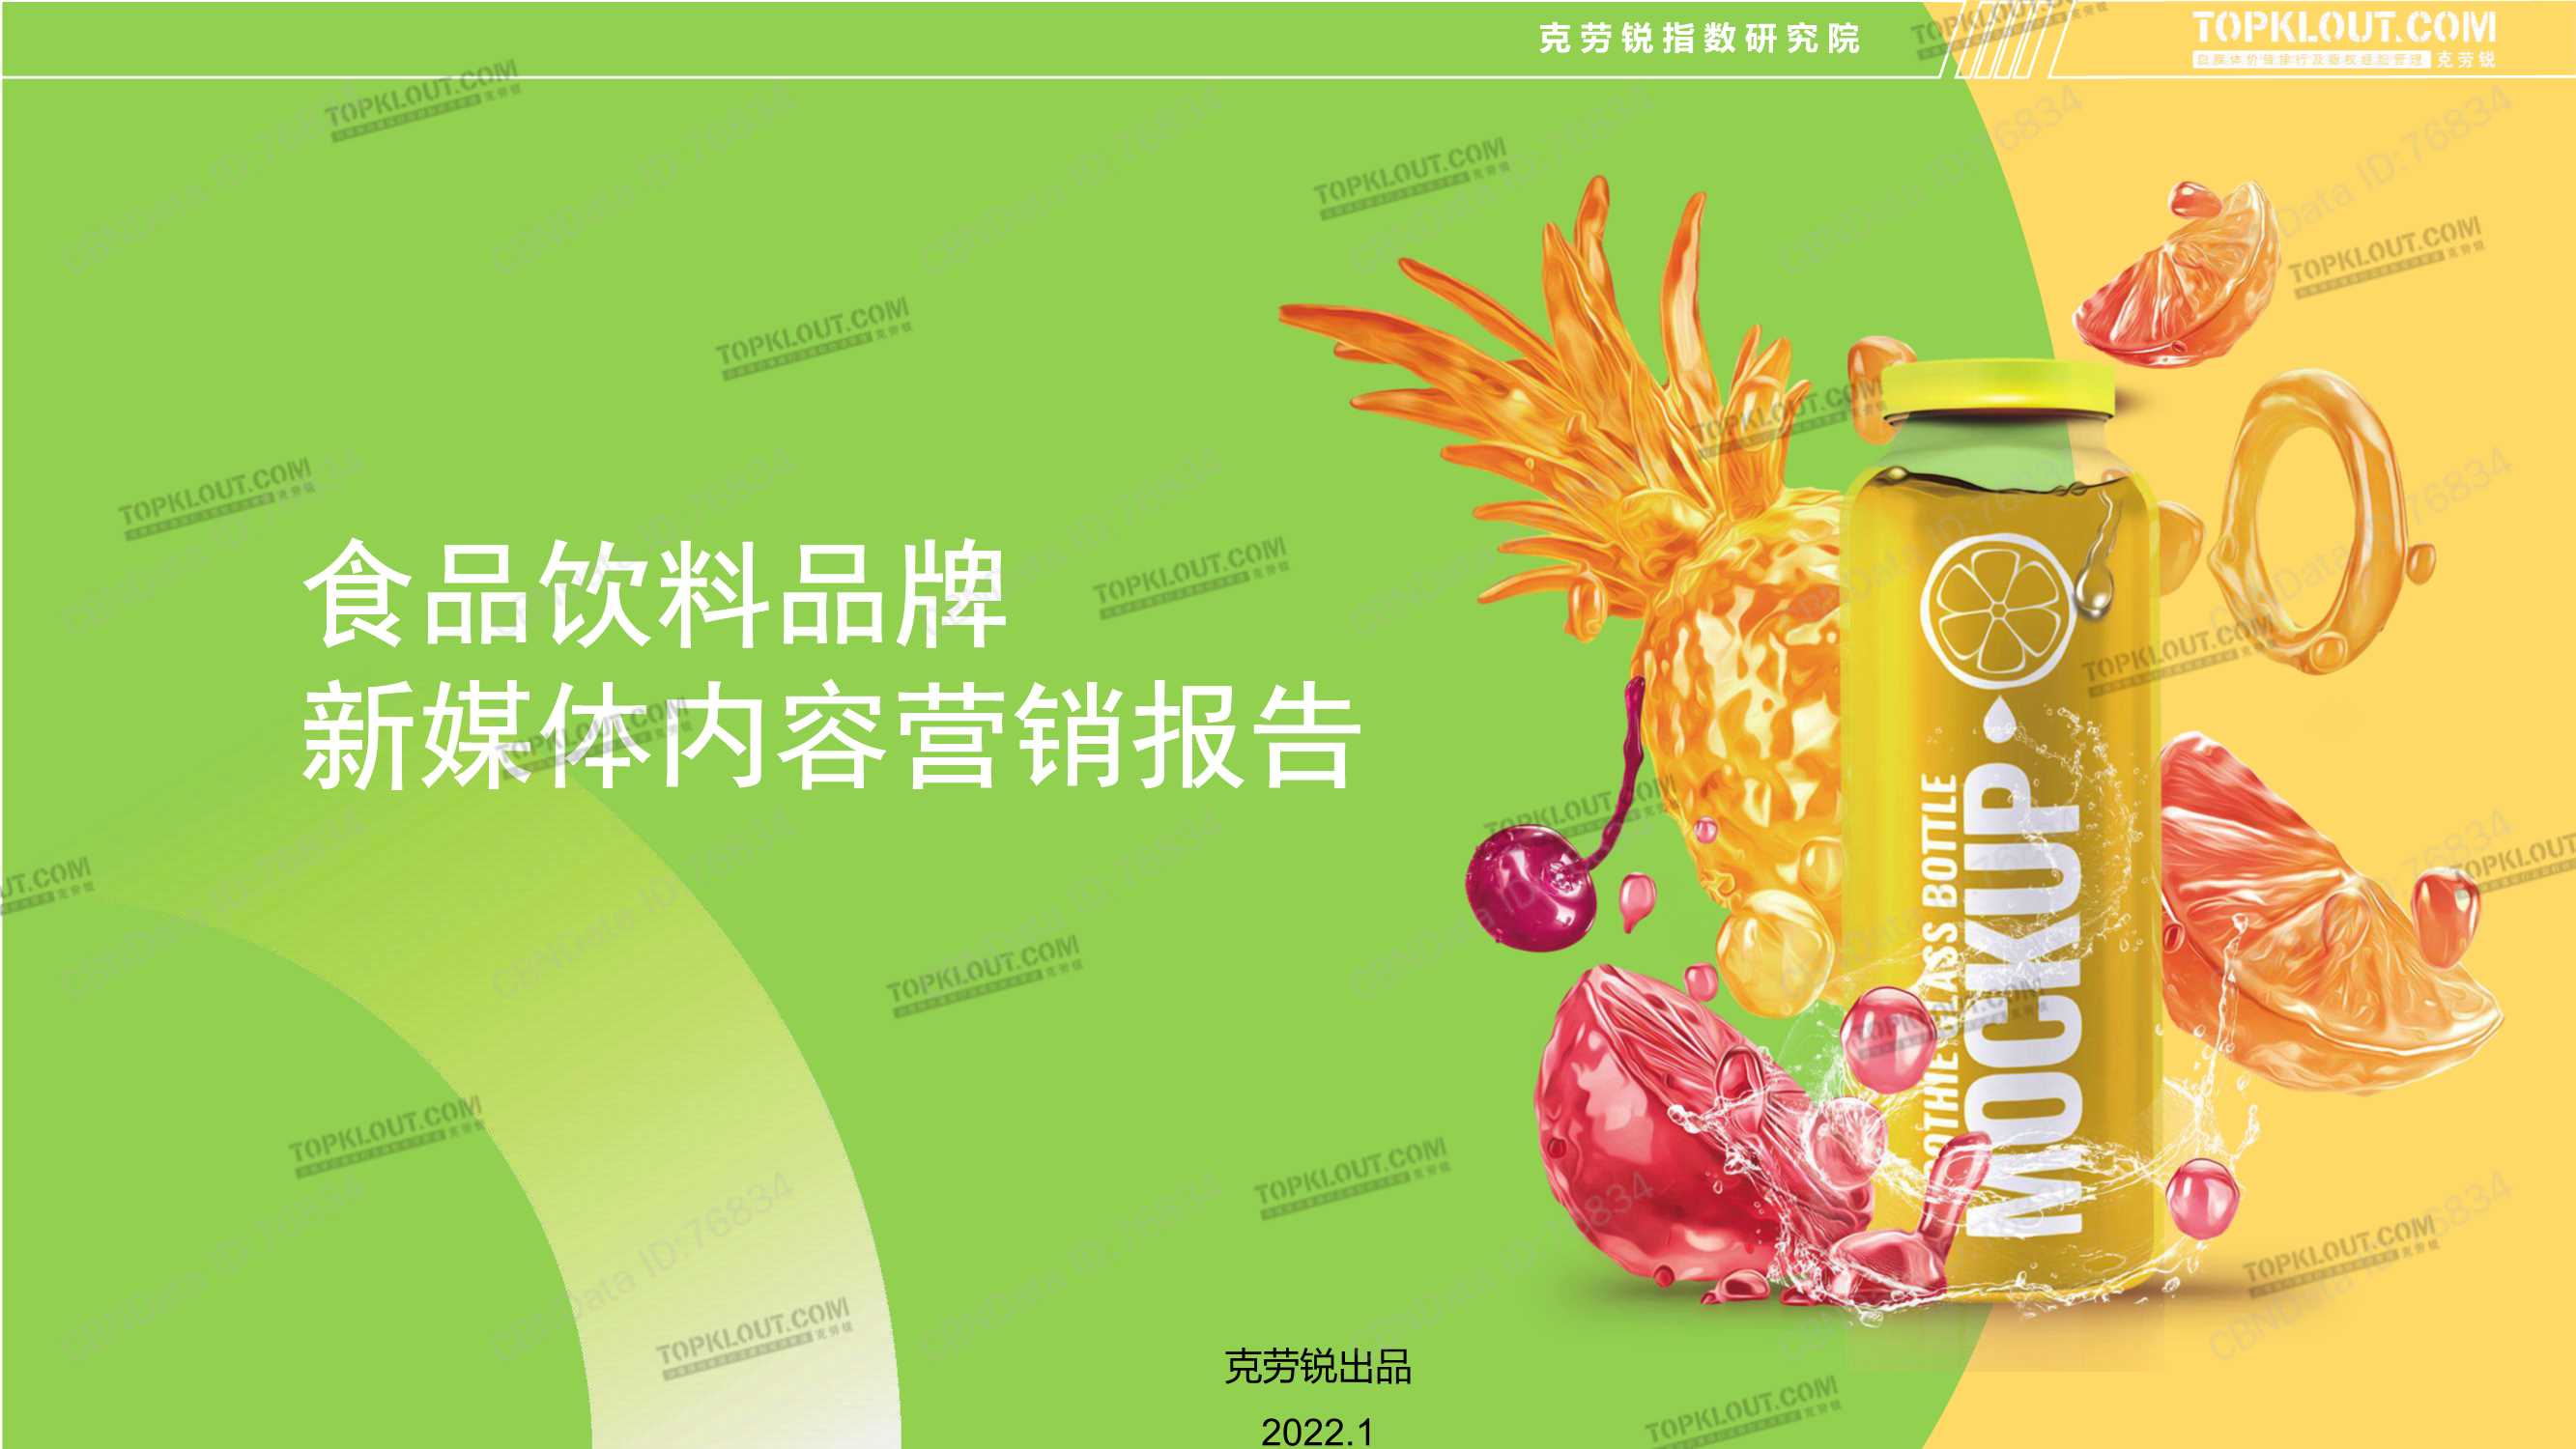 克劳锐-食品饮料品牌新媒体内容营销报告-2022.01-36页